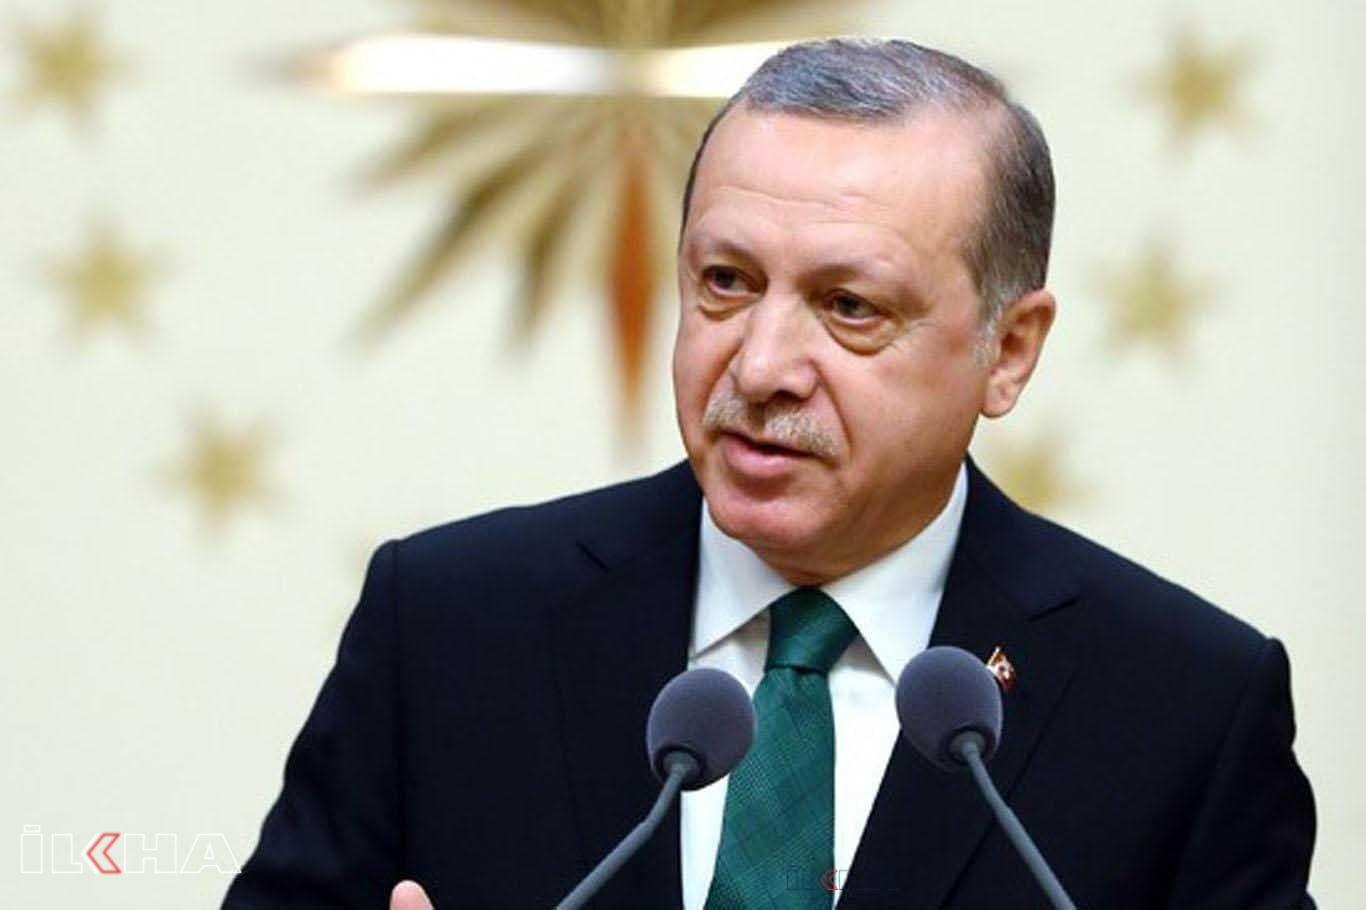 Erdoğan'ın, "Açıköğretim psikoloji lisans programlarının kapatılması" görüşü